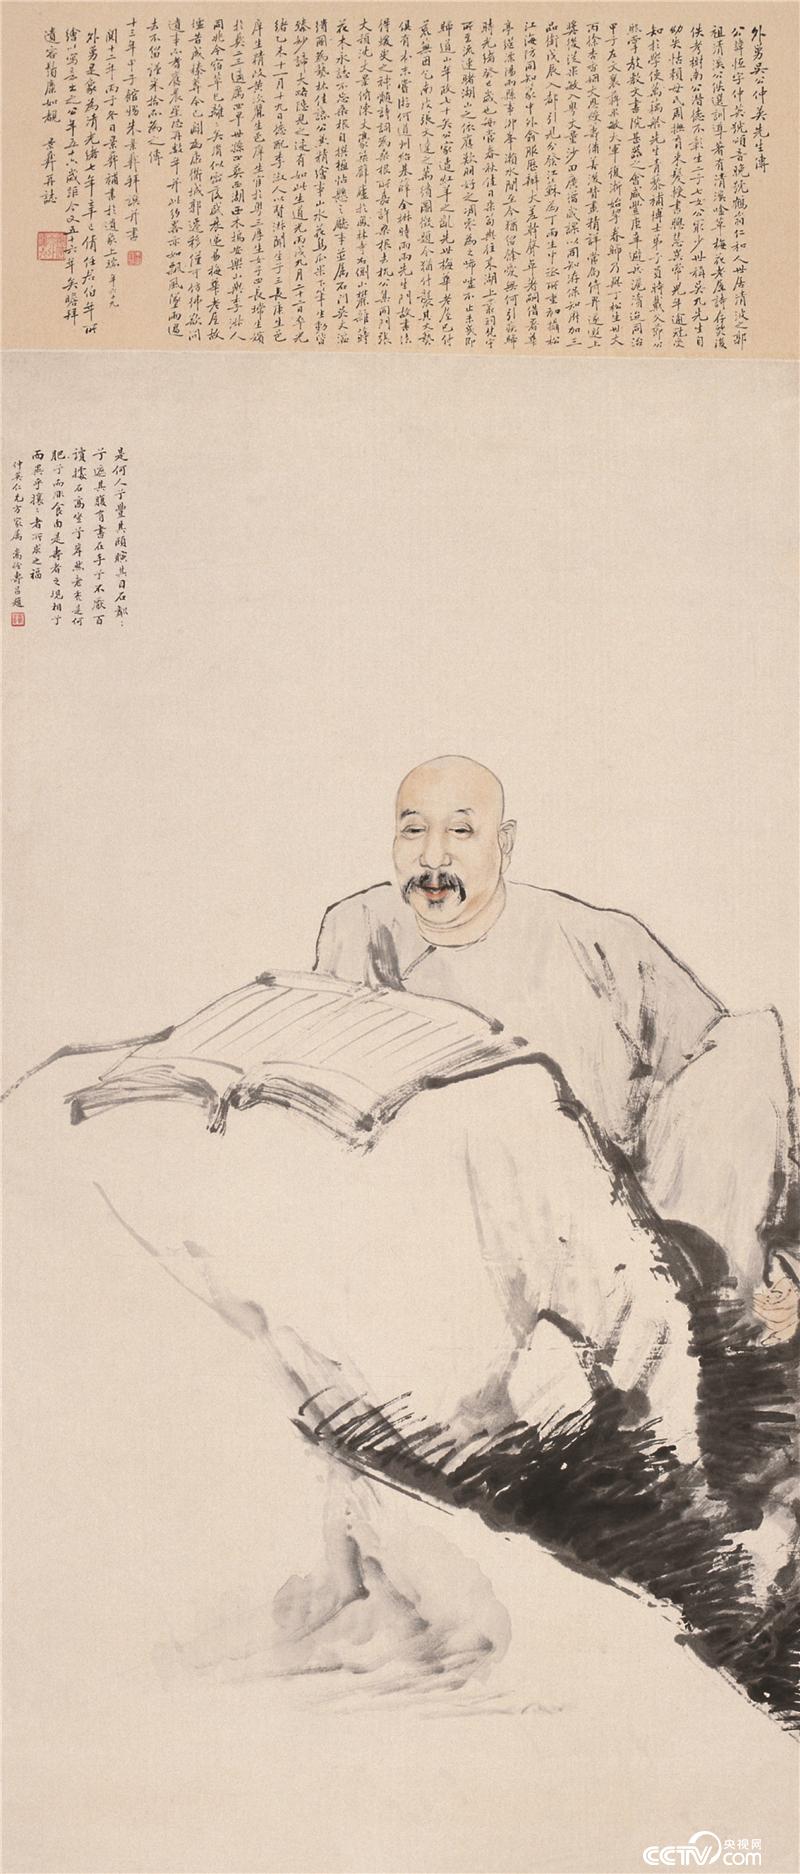 吴仲英先生像 任伯年 纸本设色   150.6cmx64.8cm 清代  中国美术馆藏